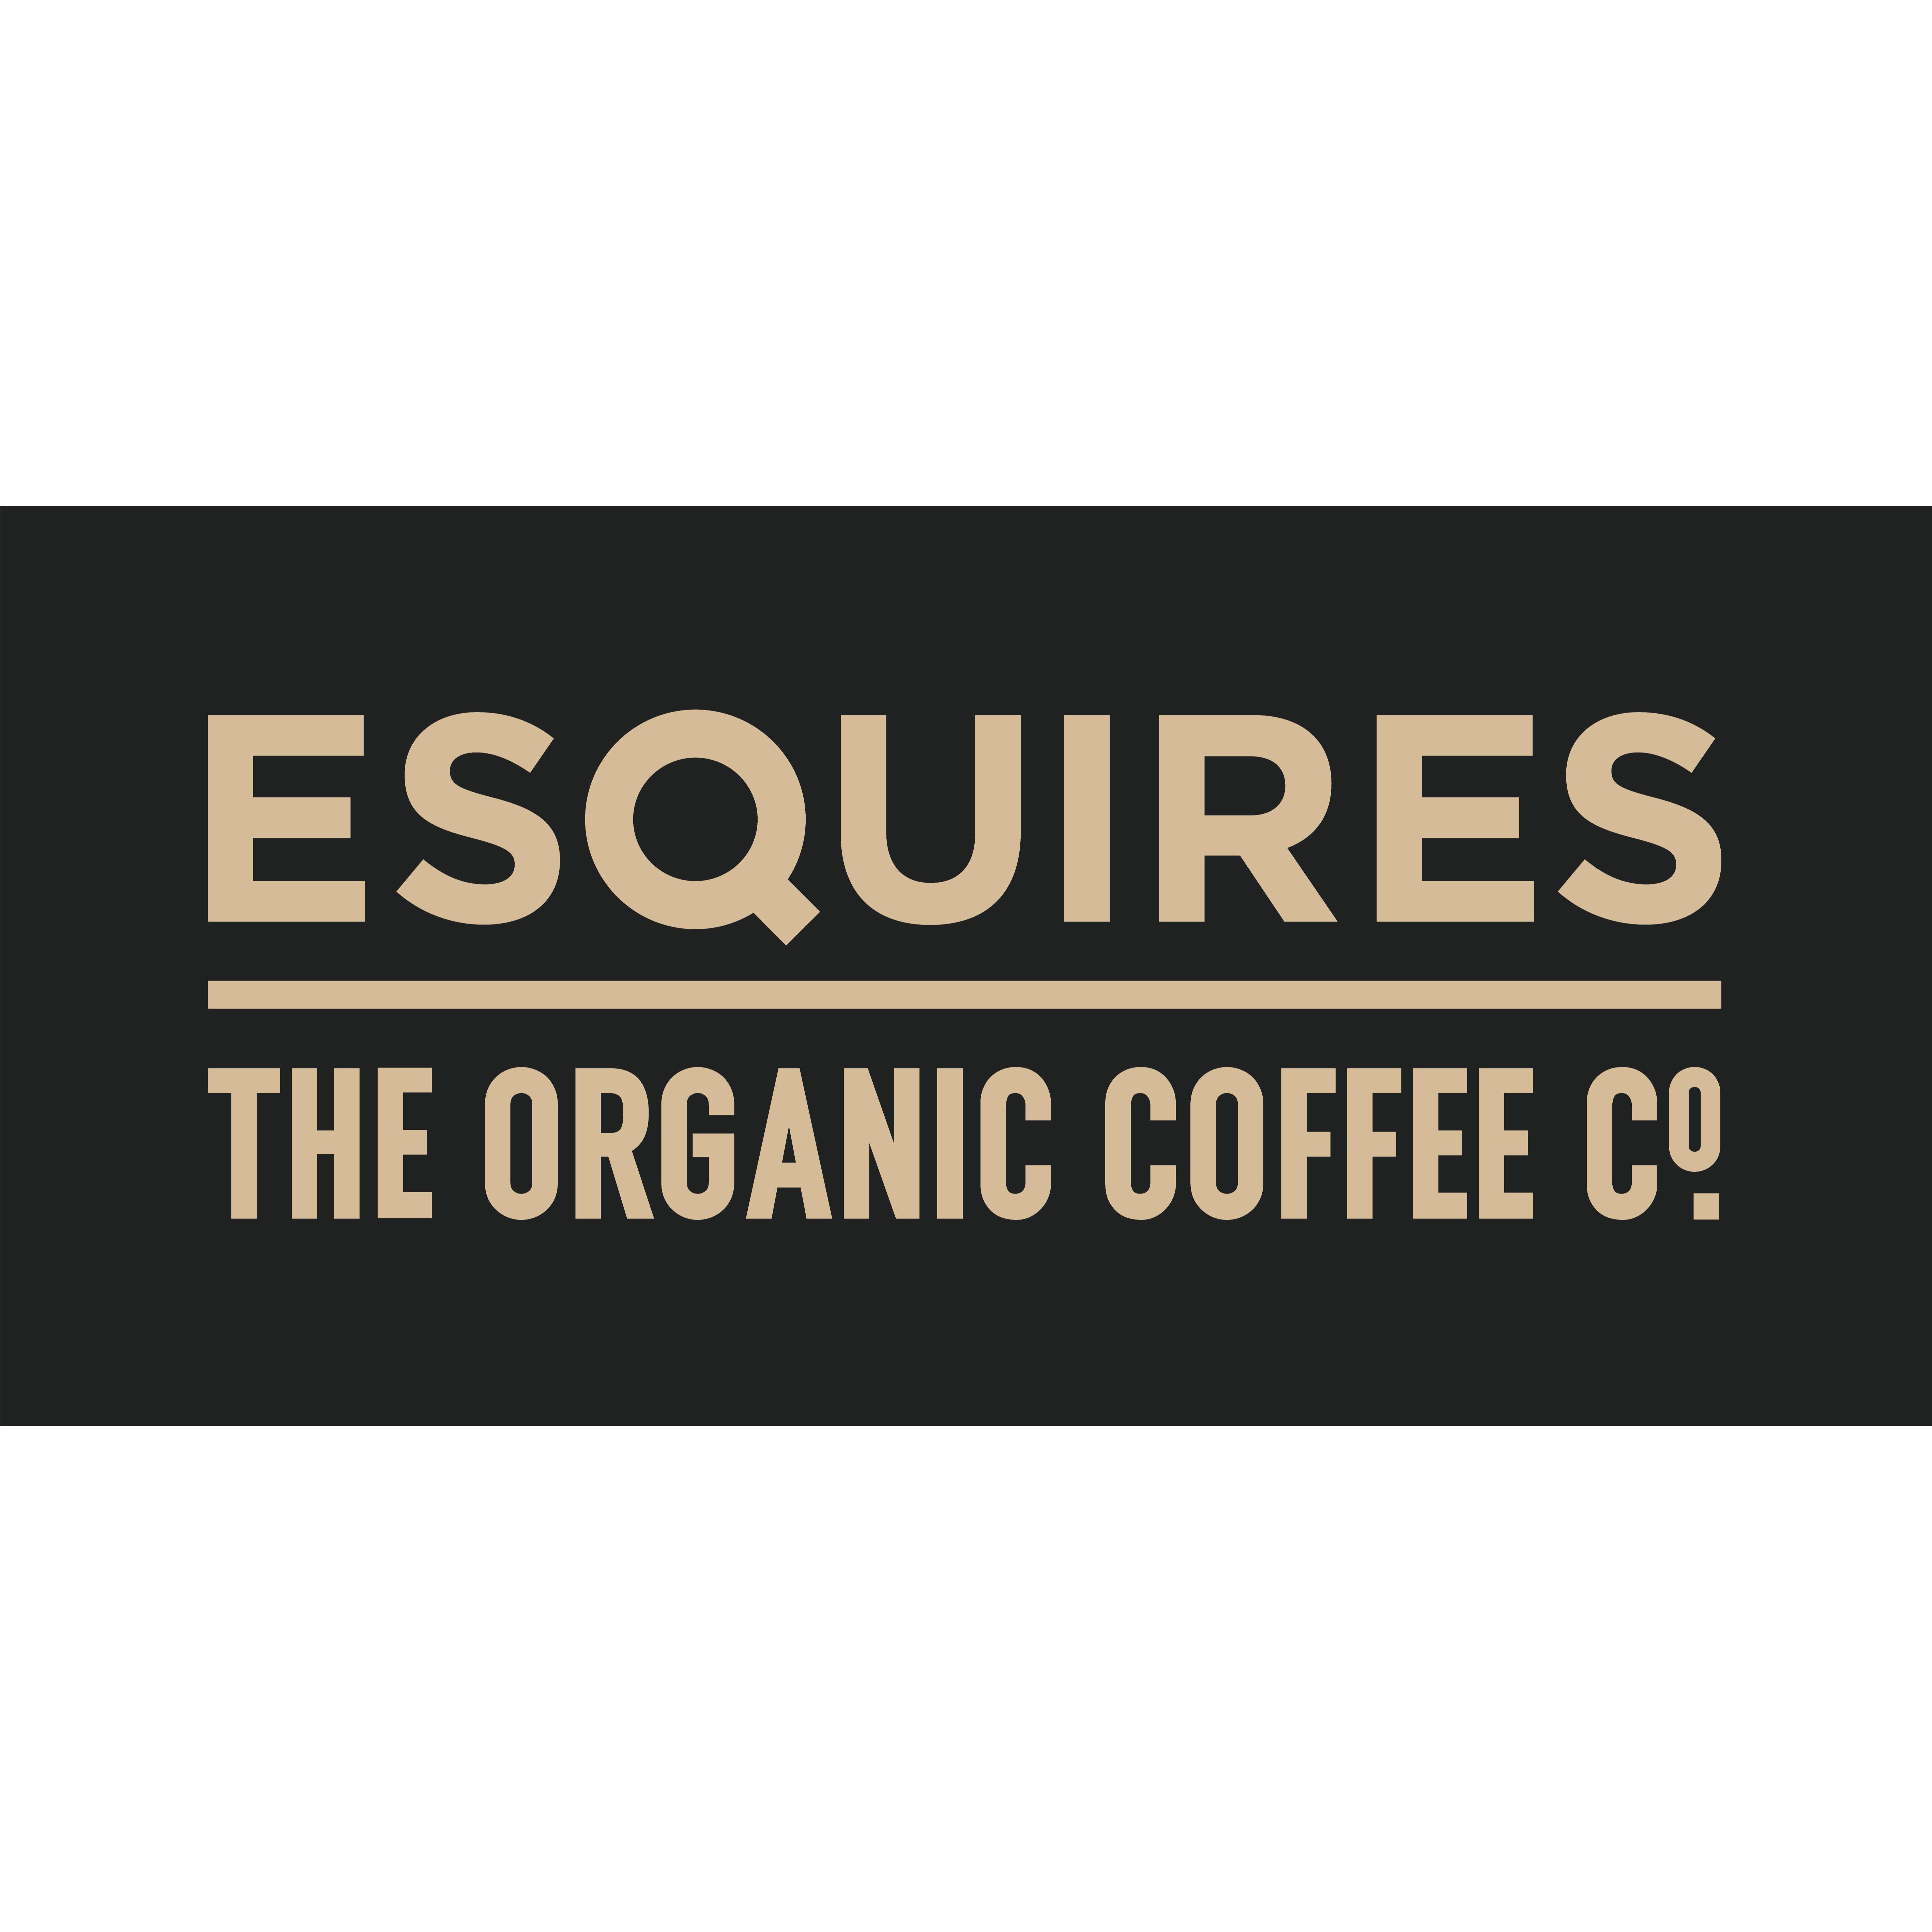 Esquires Coffee Crawley Mall - Crawley, West Sussex RH10 1FF - 01938 774569 | ShowMeLocal.com